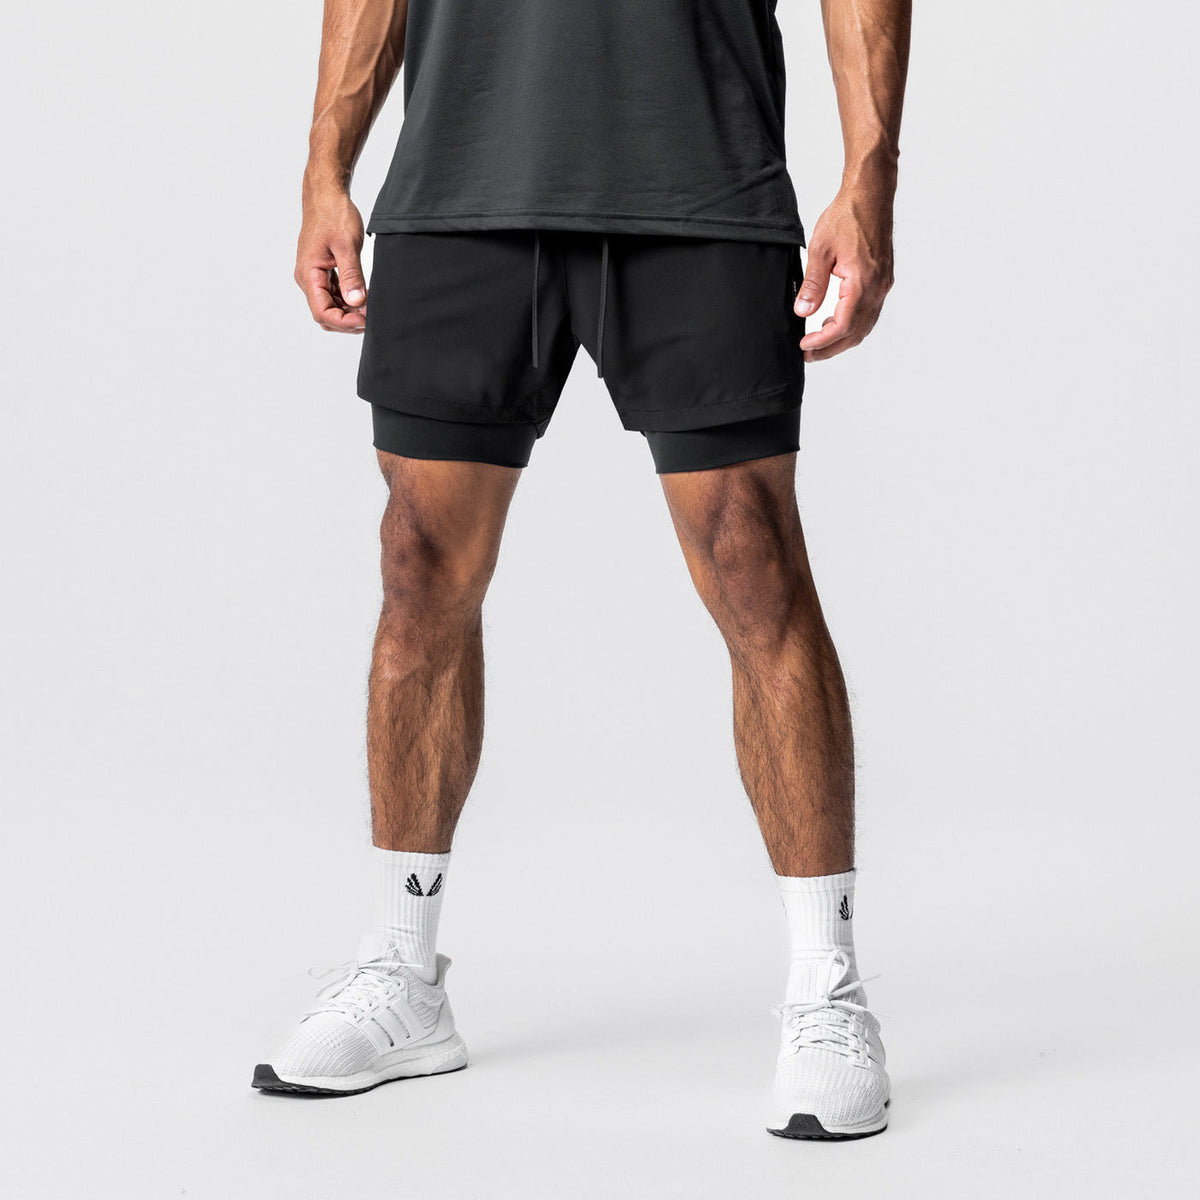 Pantalones cortos de entrenamiento Hombre Nailon Running Entrenamiento Elástico Secado rápido